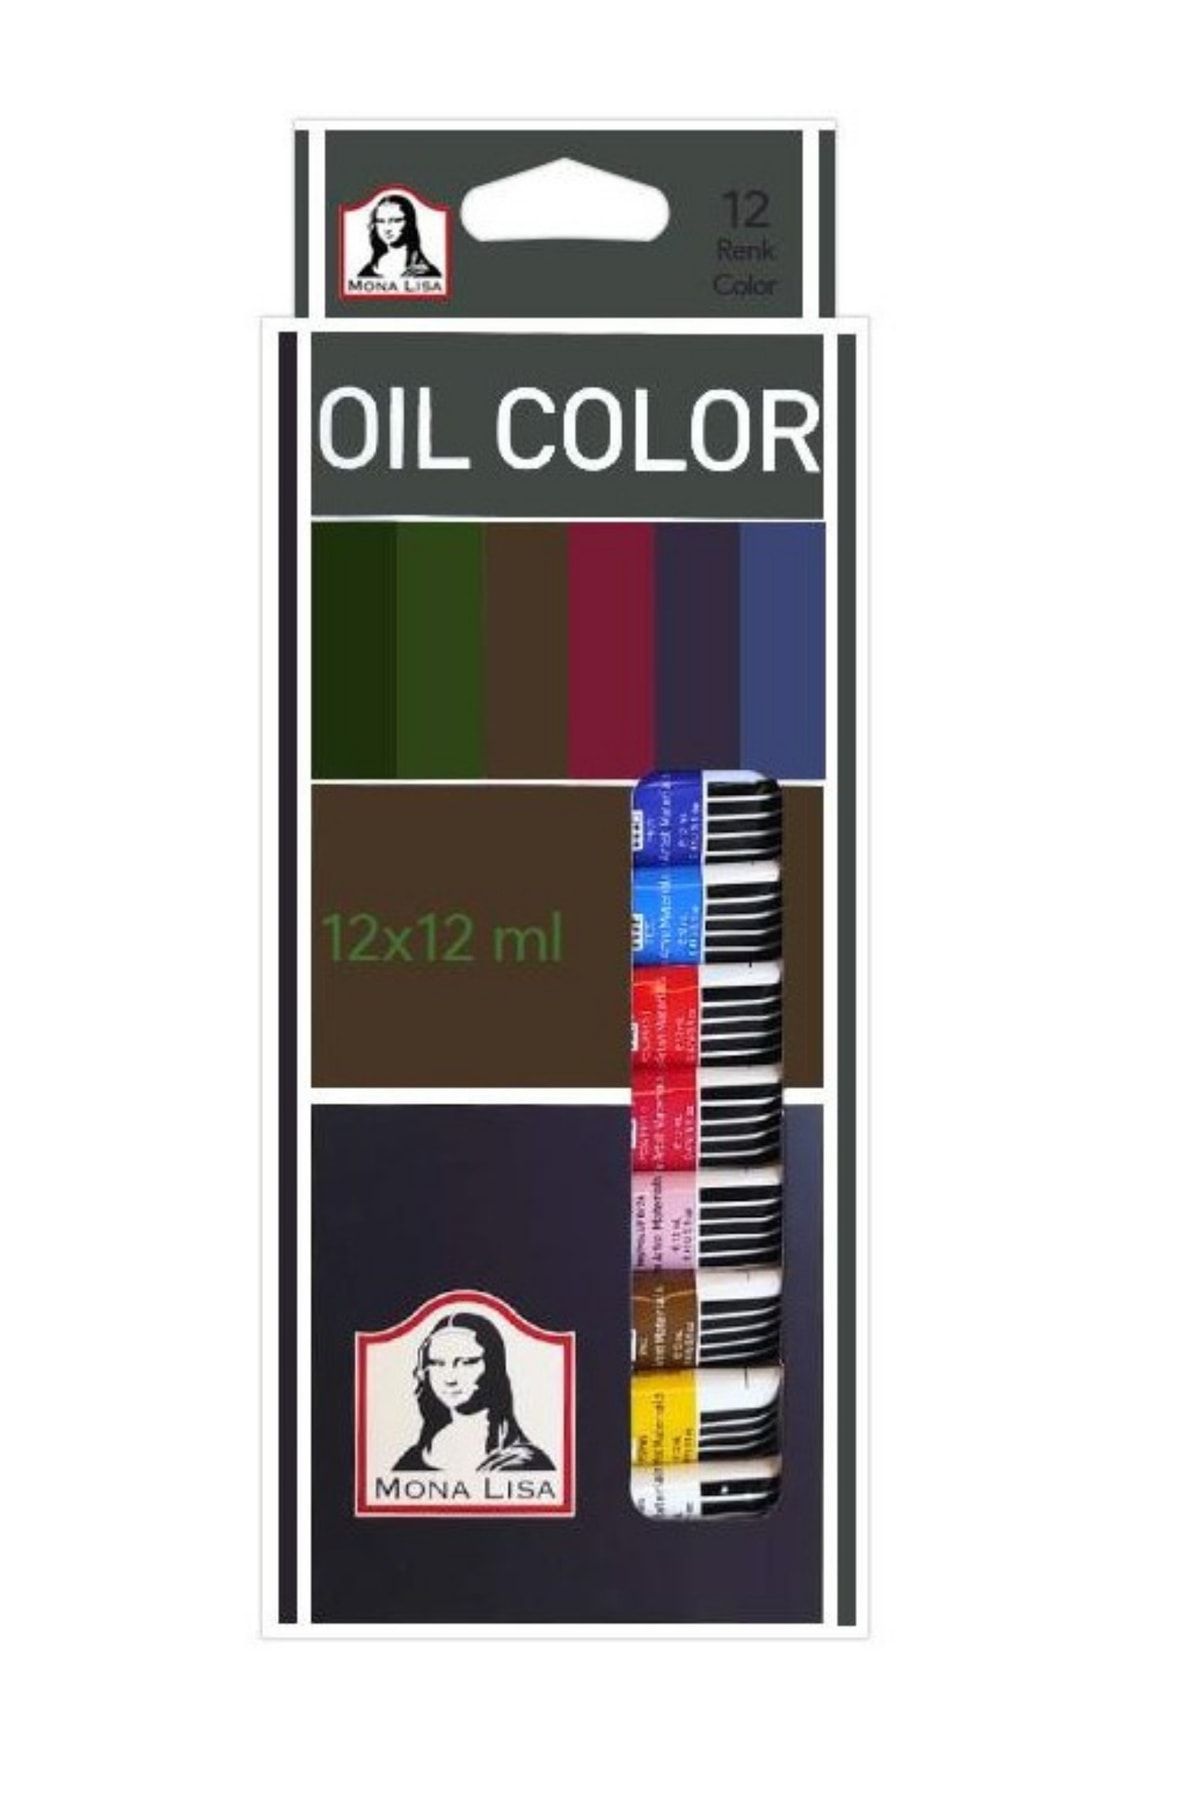 Südor Mona Lisa Yağlı Boya Oil Color 12x12ml